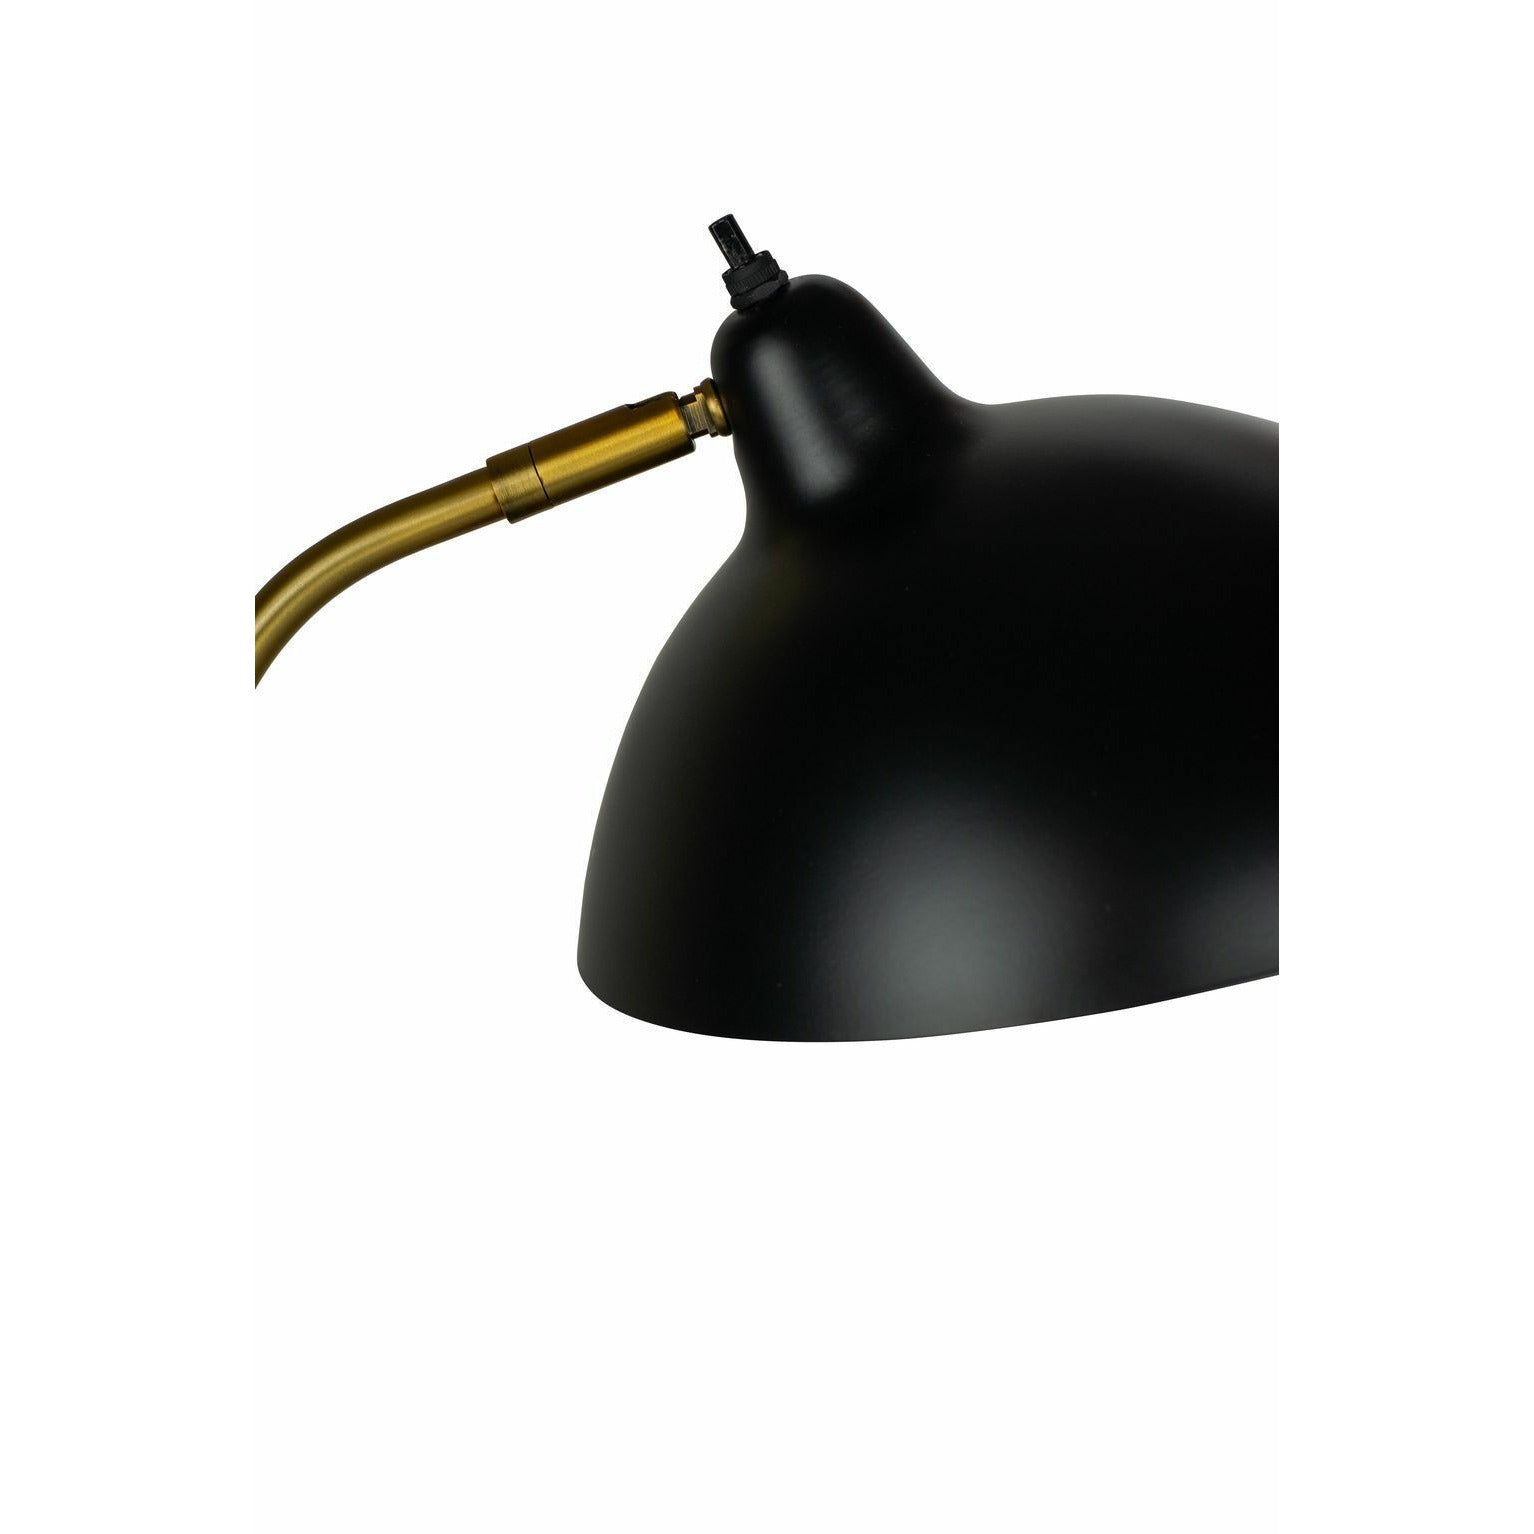 Dyberg Larsen Futura Table Lamp